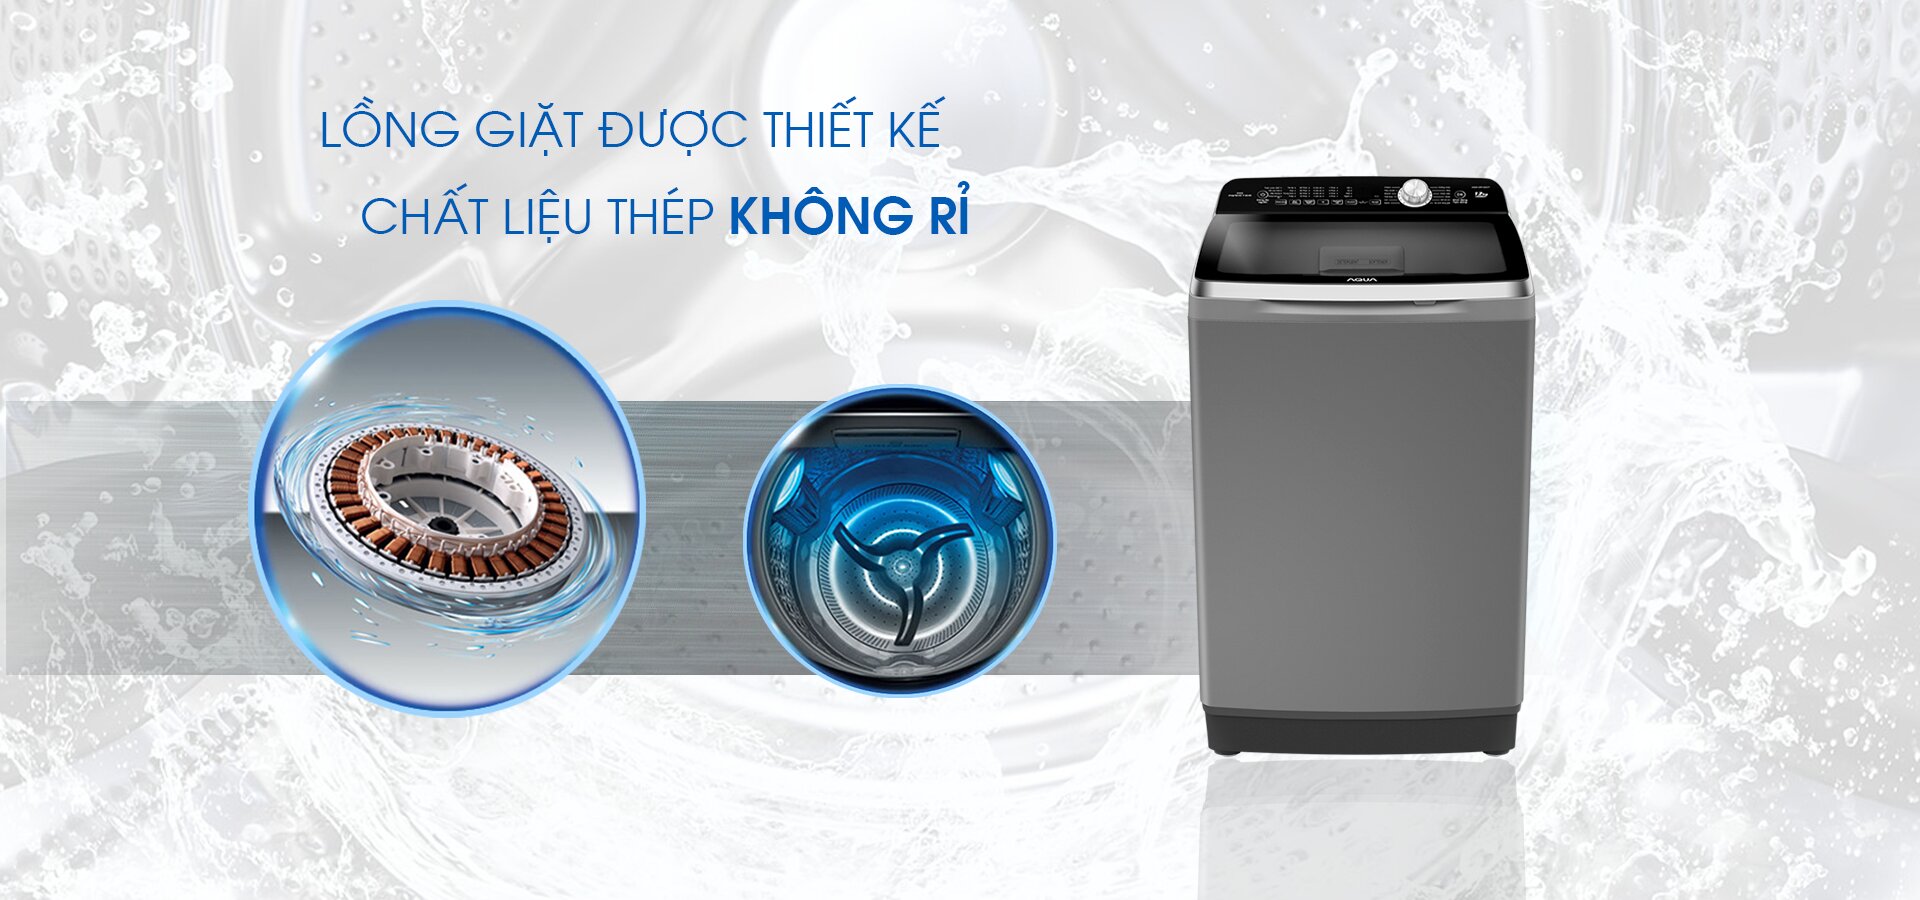 Máy giặt Aqua của nước nào sản xuất?